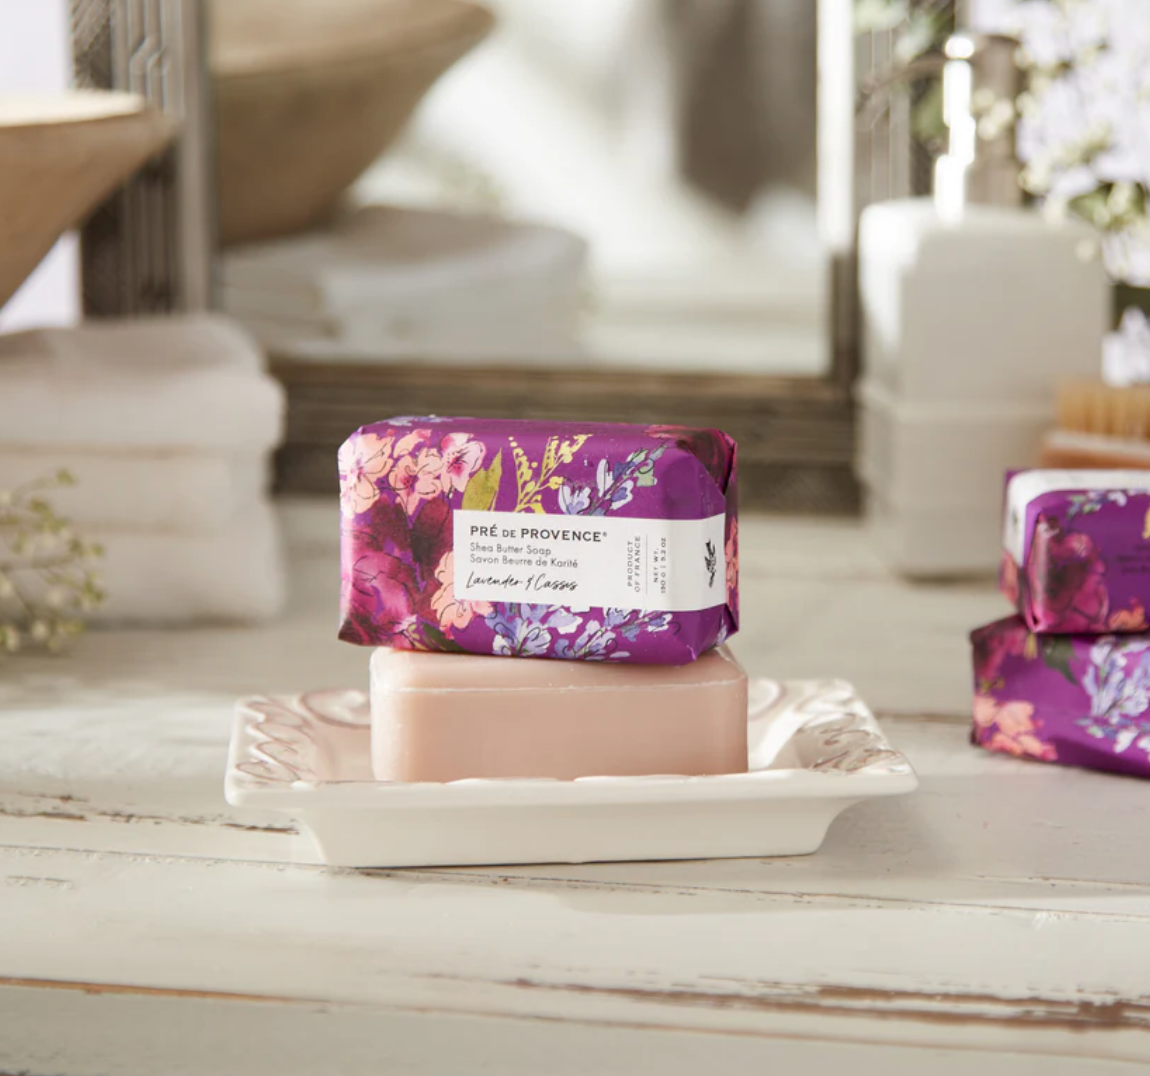 Lavender & Cassis soap bar by Pré de Provence